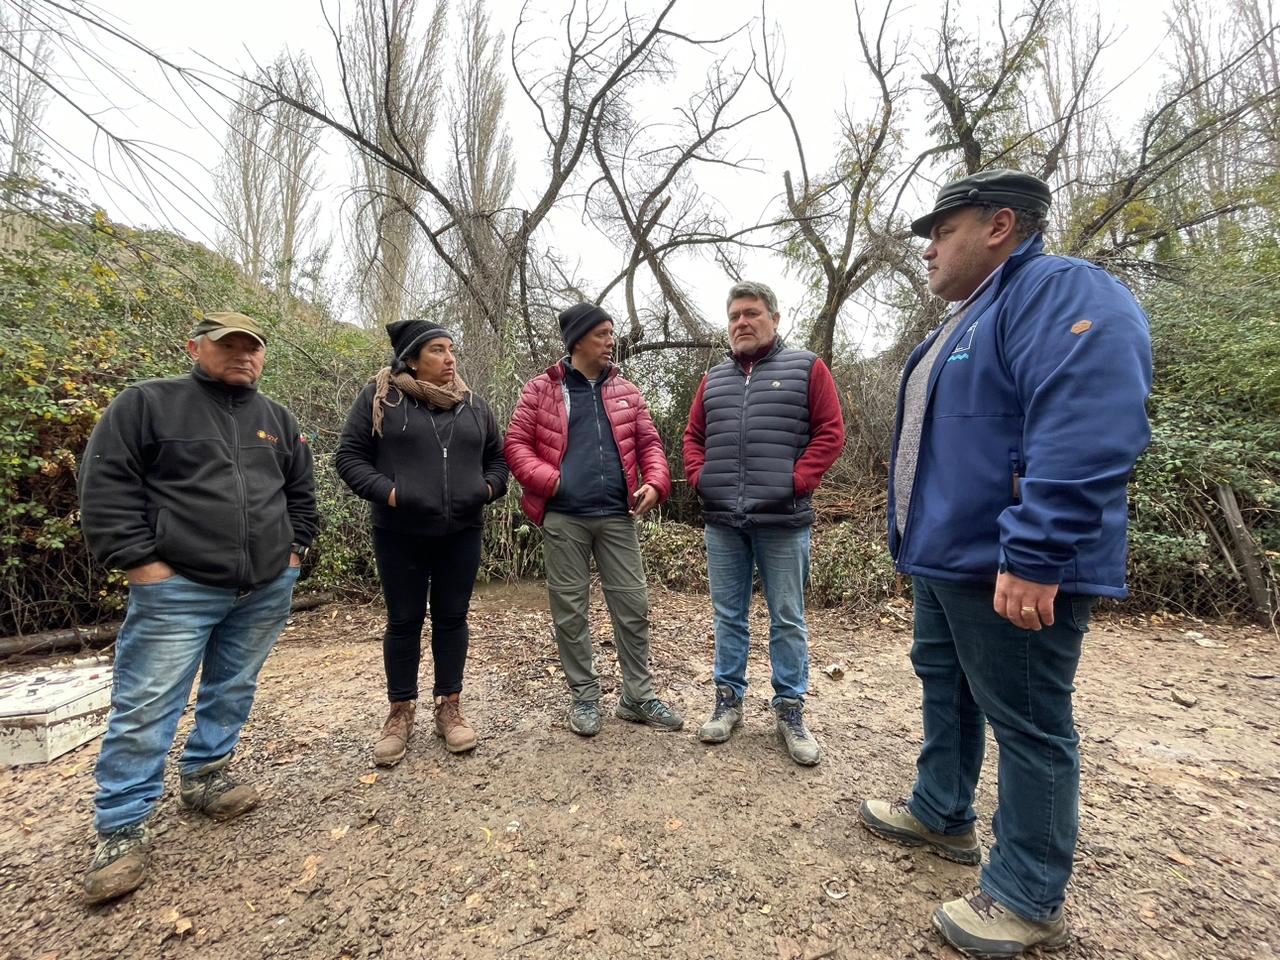 LOS ANDES: Diputado Nelson Venegas critica servicio de Esval durante la emergencia en la provincia de Los Andes: “Actuaron nuevamente de manera muy desordenada, desorganizada”